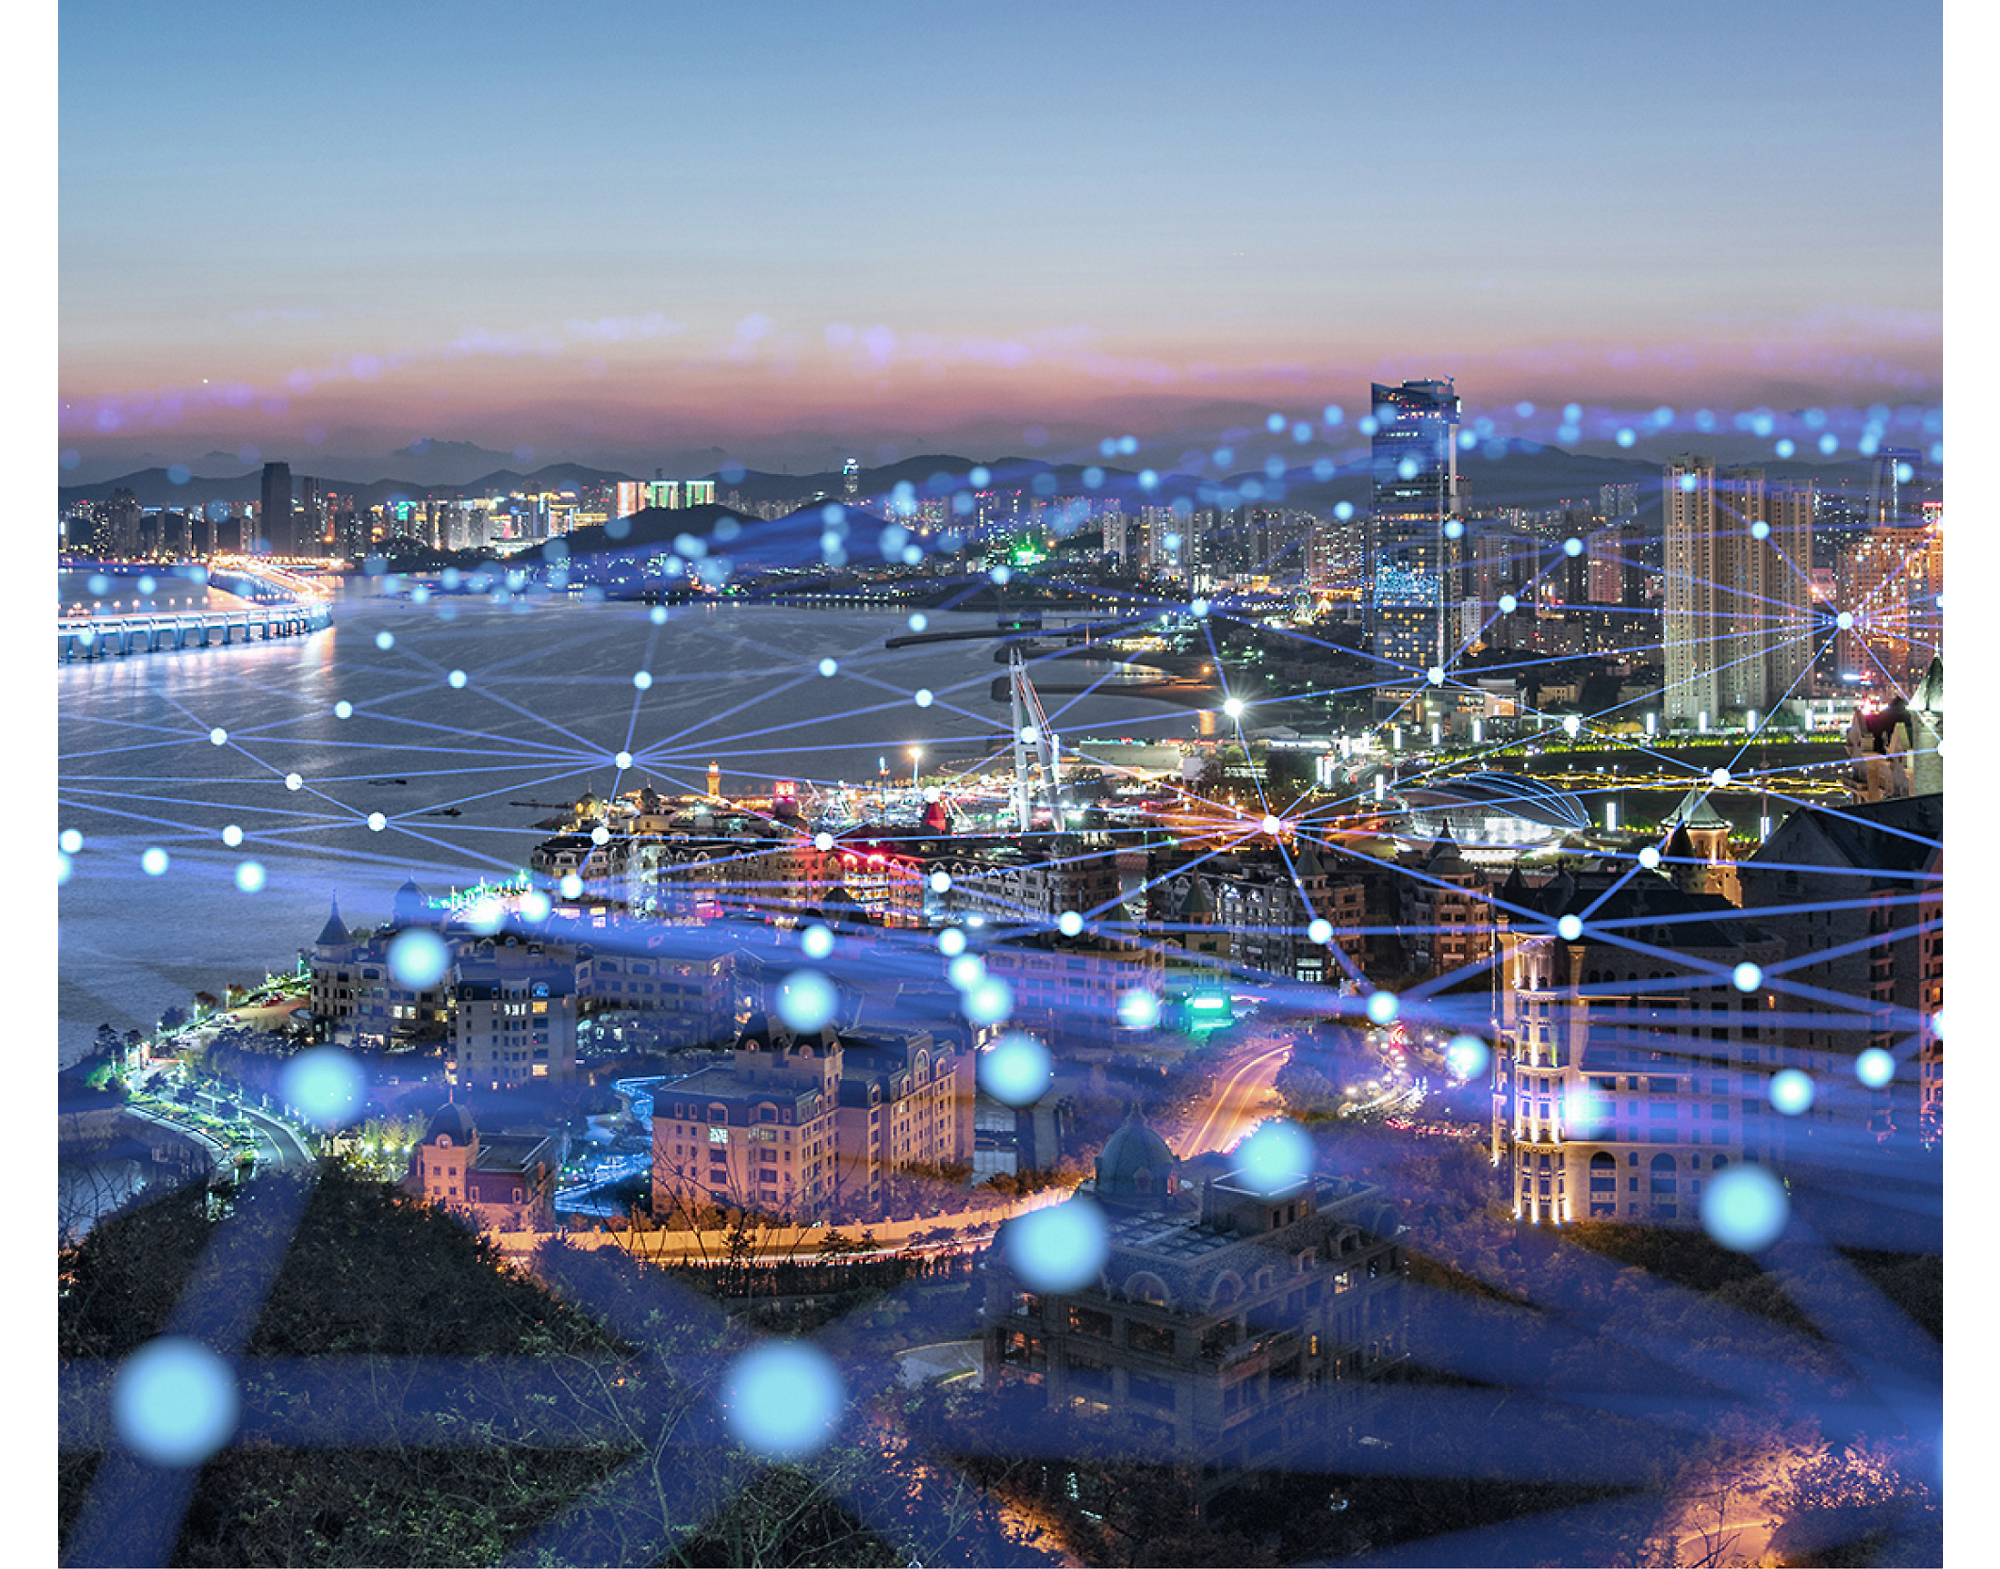 Vista aérea de una ciudad costera al anochecer, mostrando calles y edificios iluminados, superpuestos con una brillante cuadrícula de red digital.